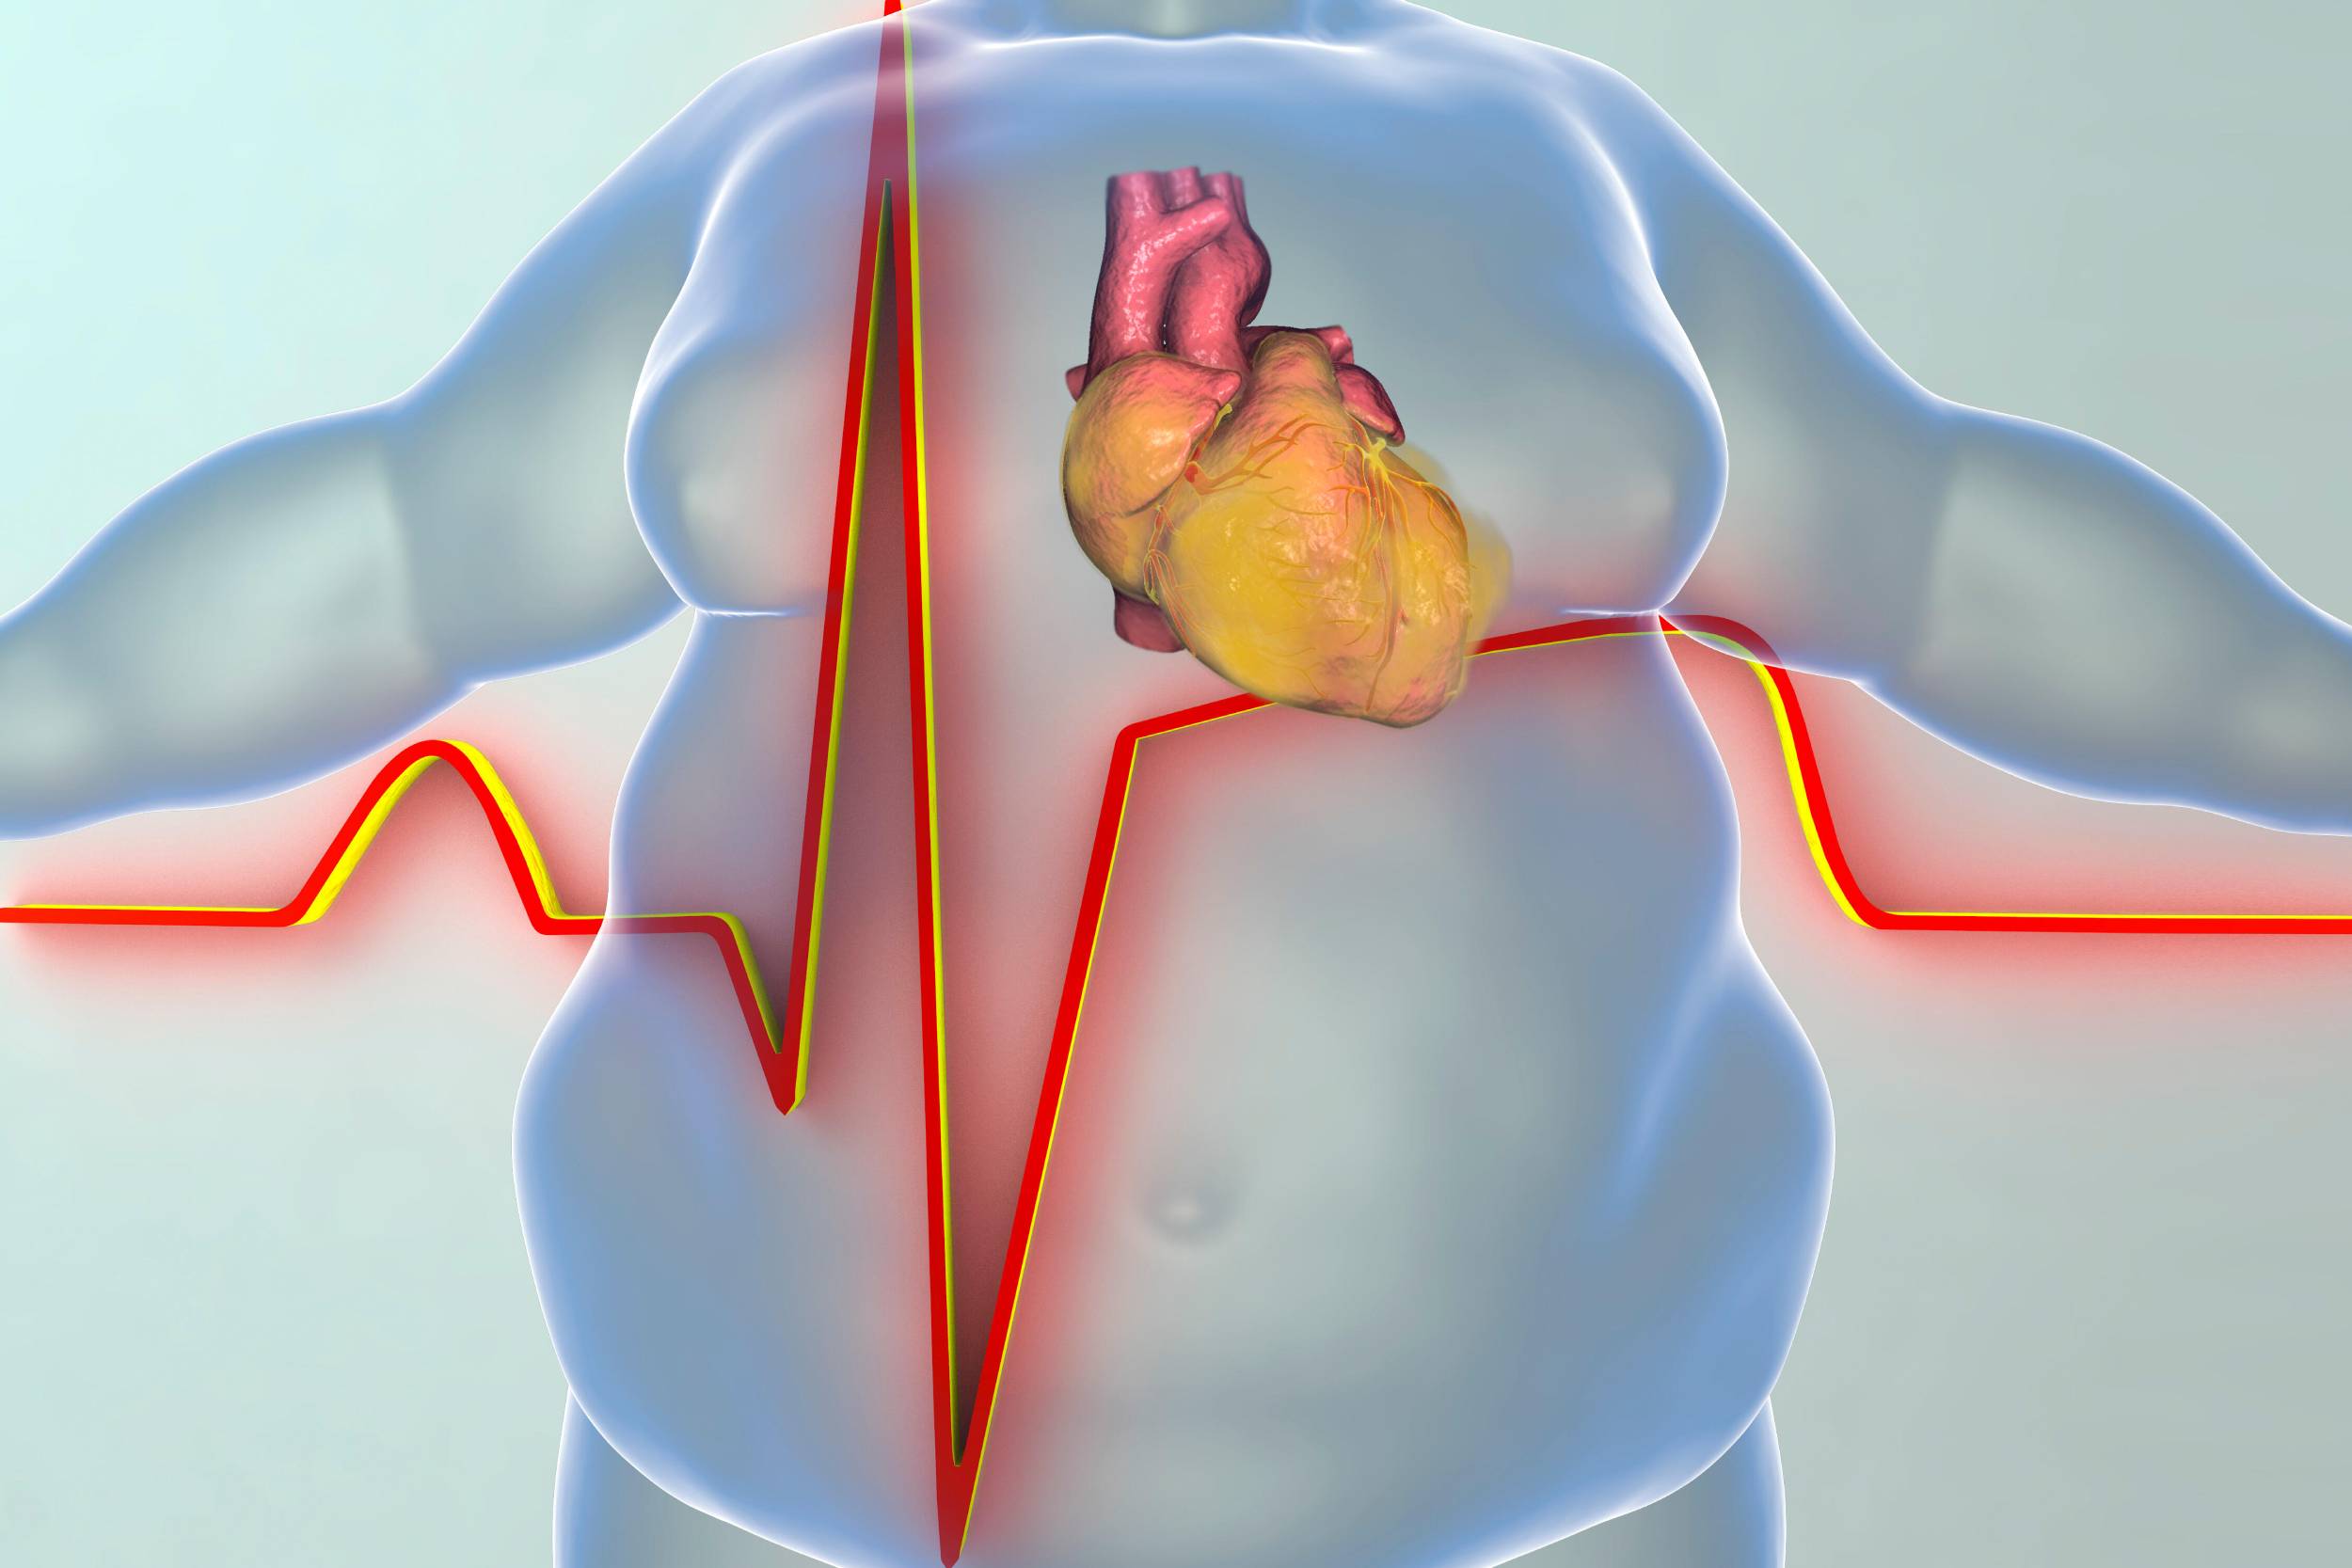 Artıq bədən çəkisinin ürək-damar sisteminə təsirləri nələrdir? - İnvaziv kardioloq AÇIQLADI